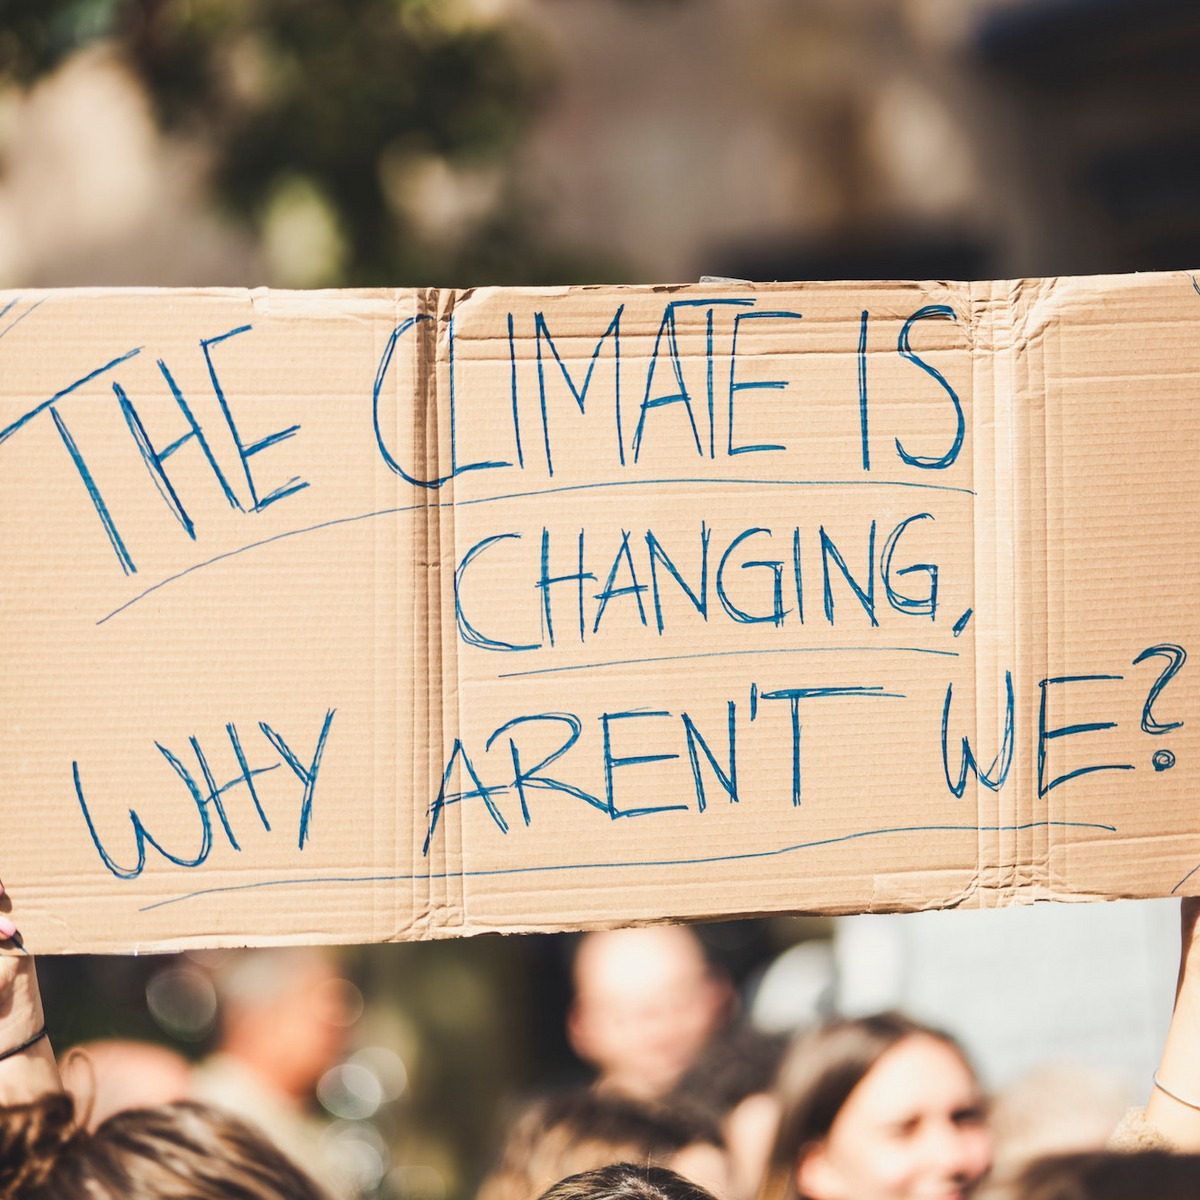 Klimaaktivisten halten ein Plakat hoch: "The climate is changing, why aren't we?"